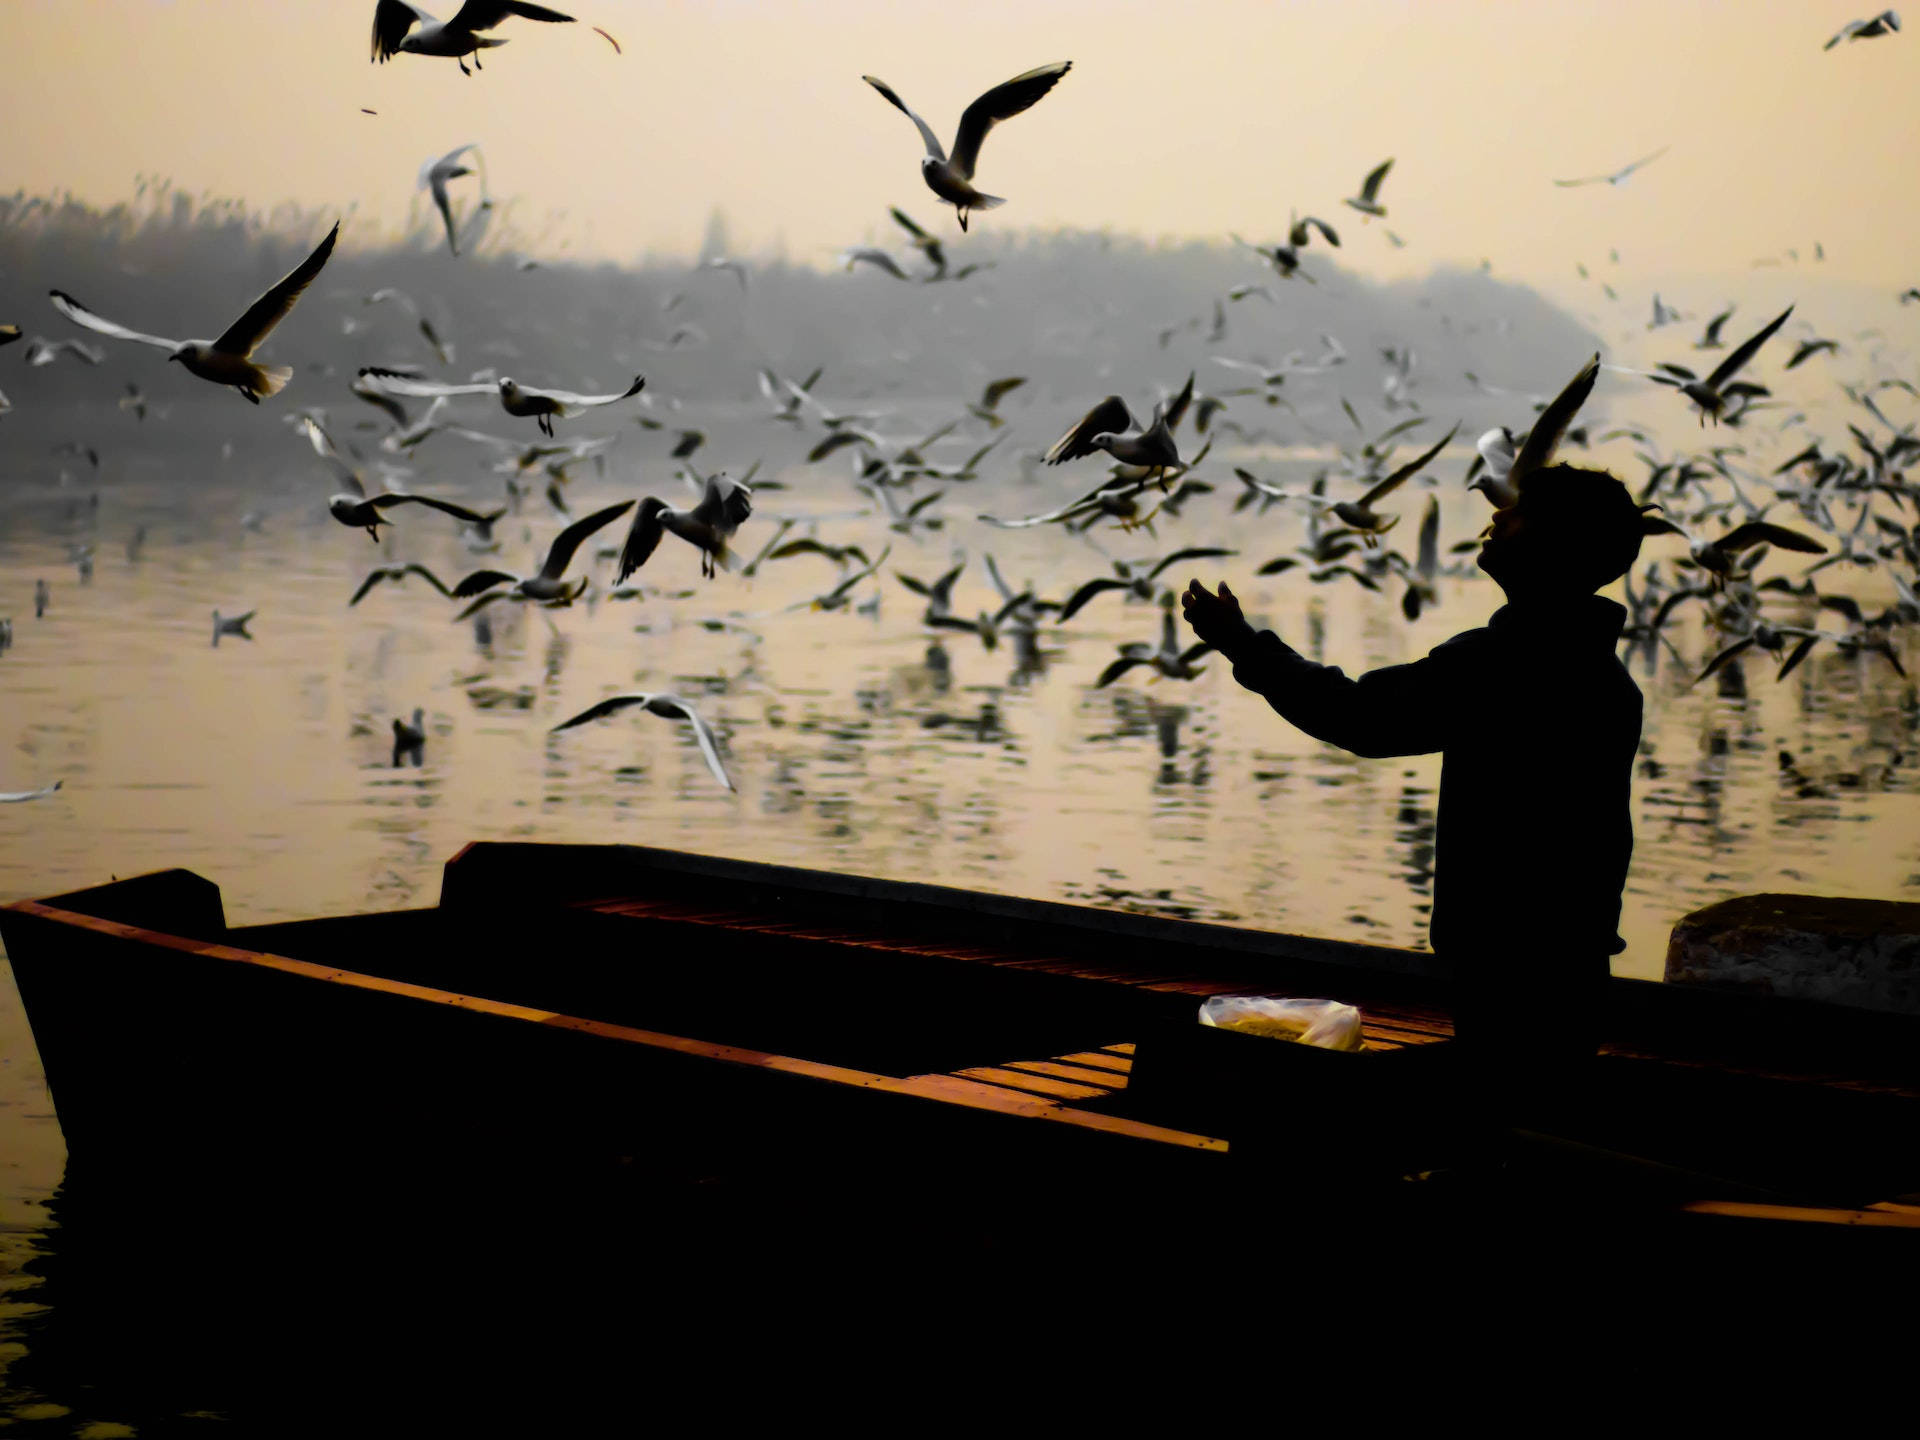 Mand står på båden under flyvende fugle Wallpaper